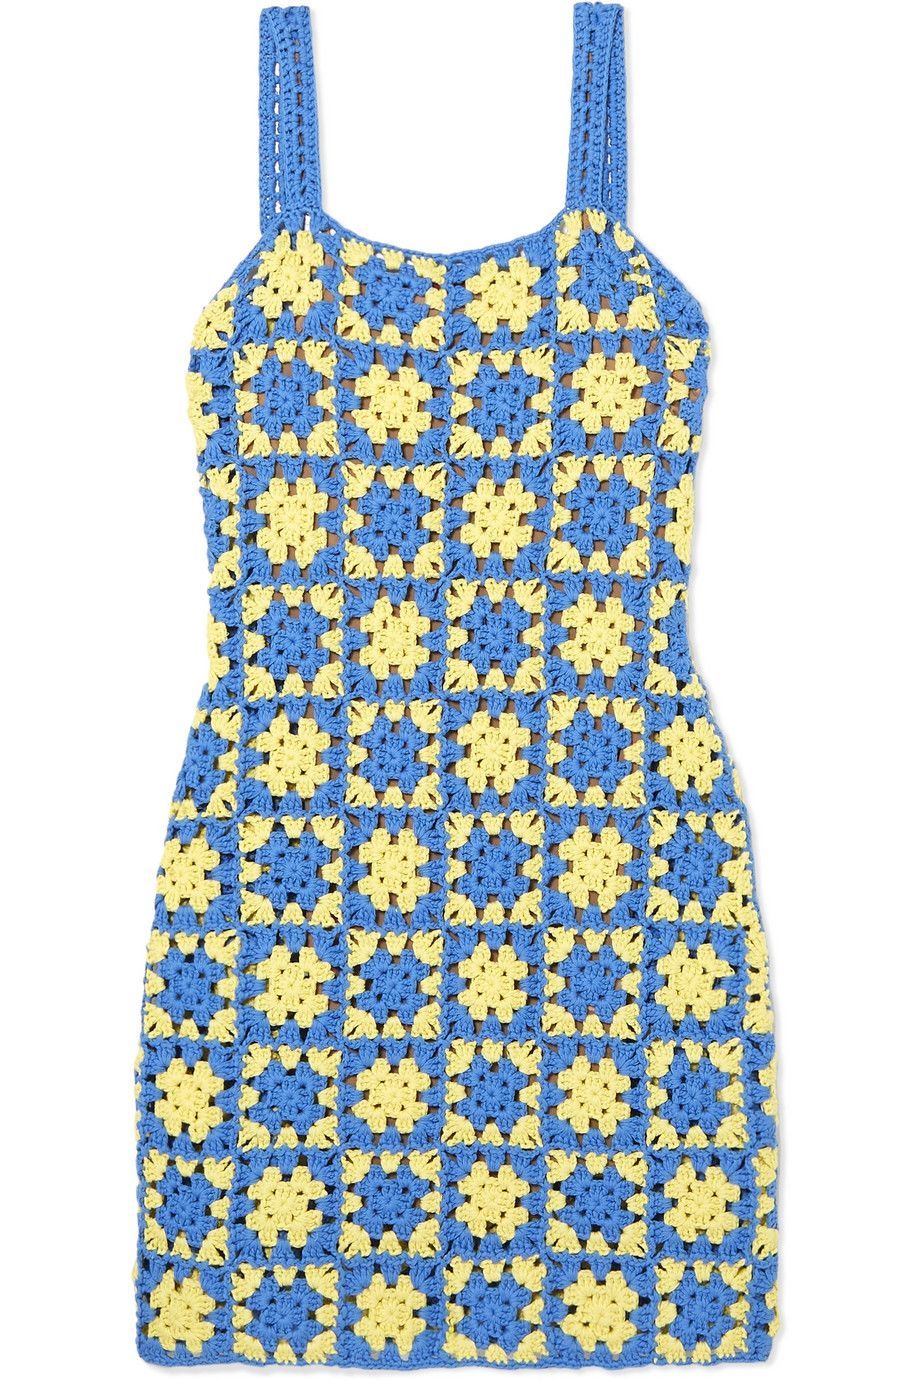 Rekomendasi Mini Dress yang Pas Dipakai Saat Musim Panas